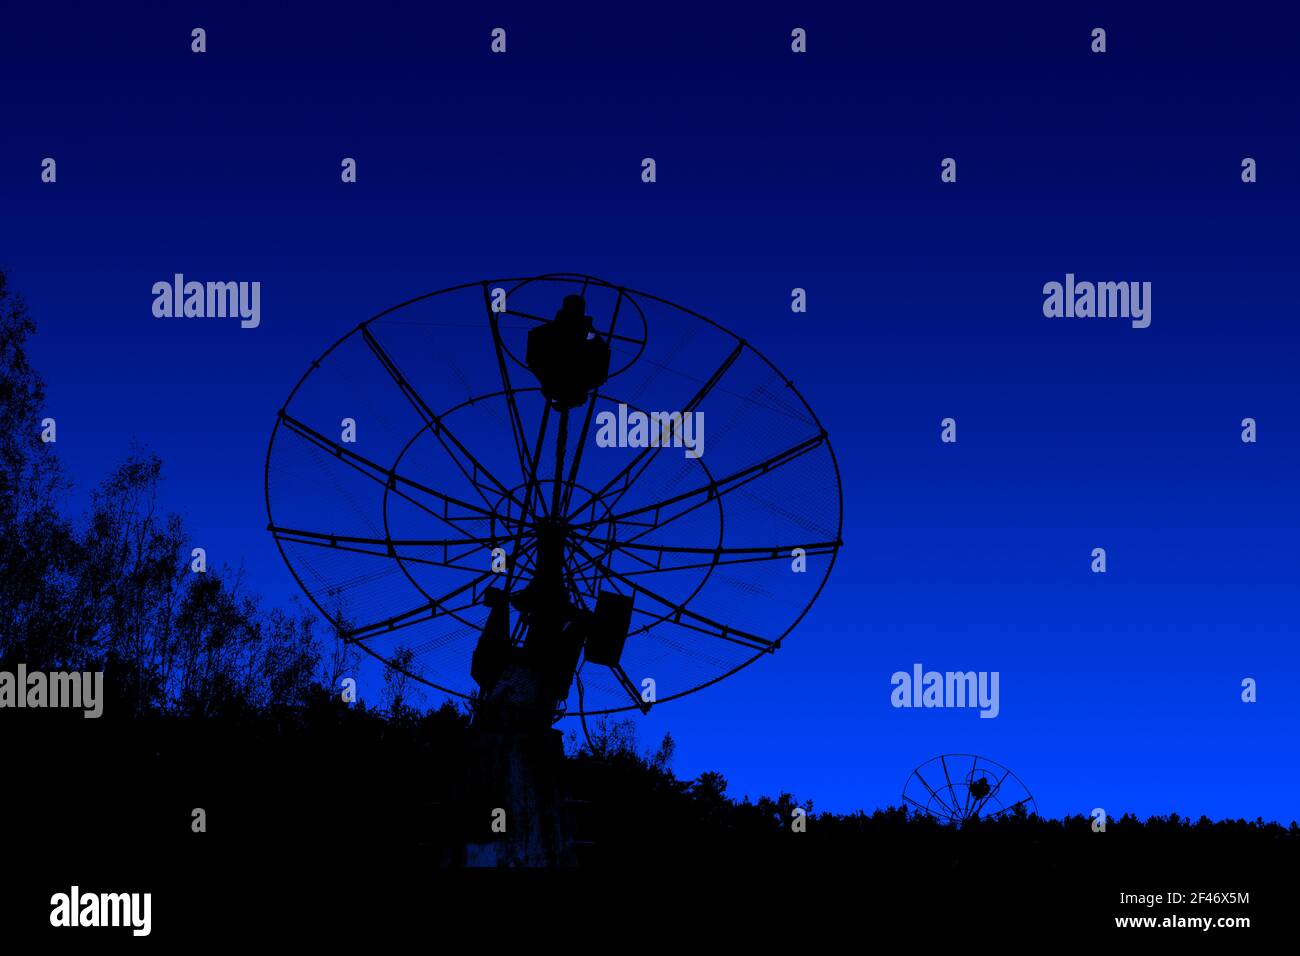 les silhouettes radiotelescopes sont placées sous un fond bleu foncé Banque D'Images